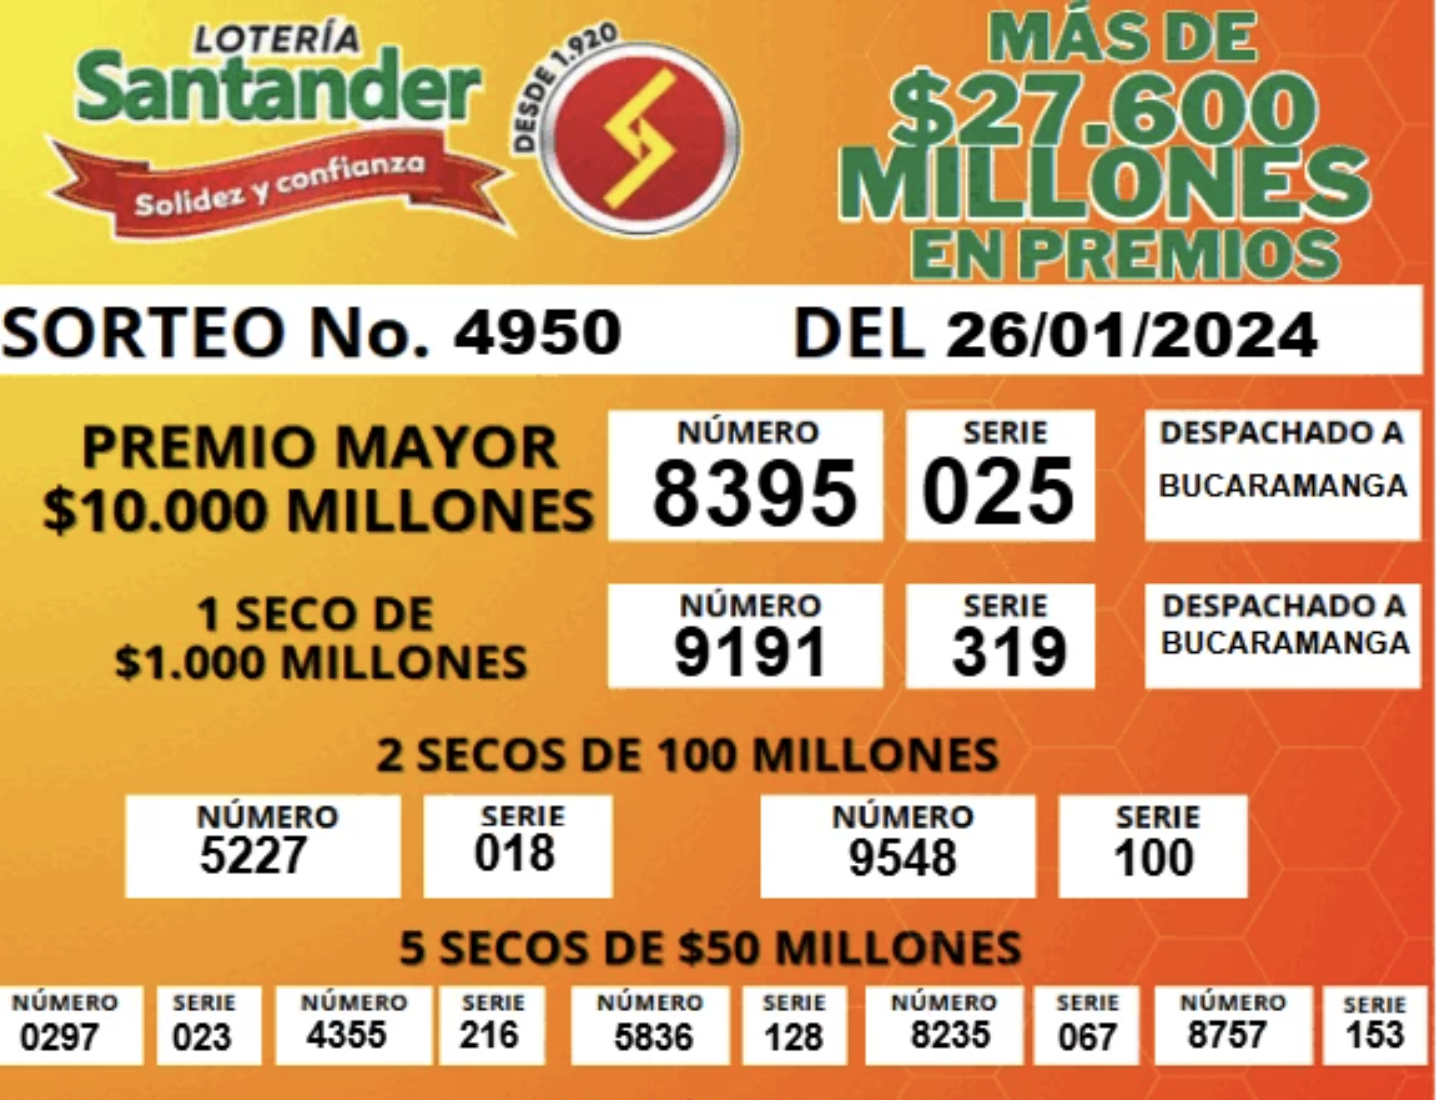 Créditos: Lotería de Santander 